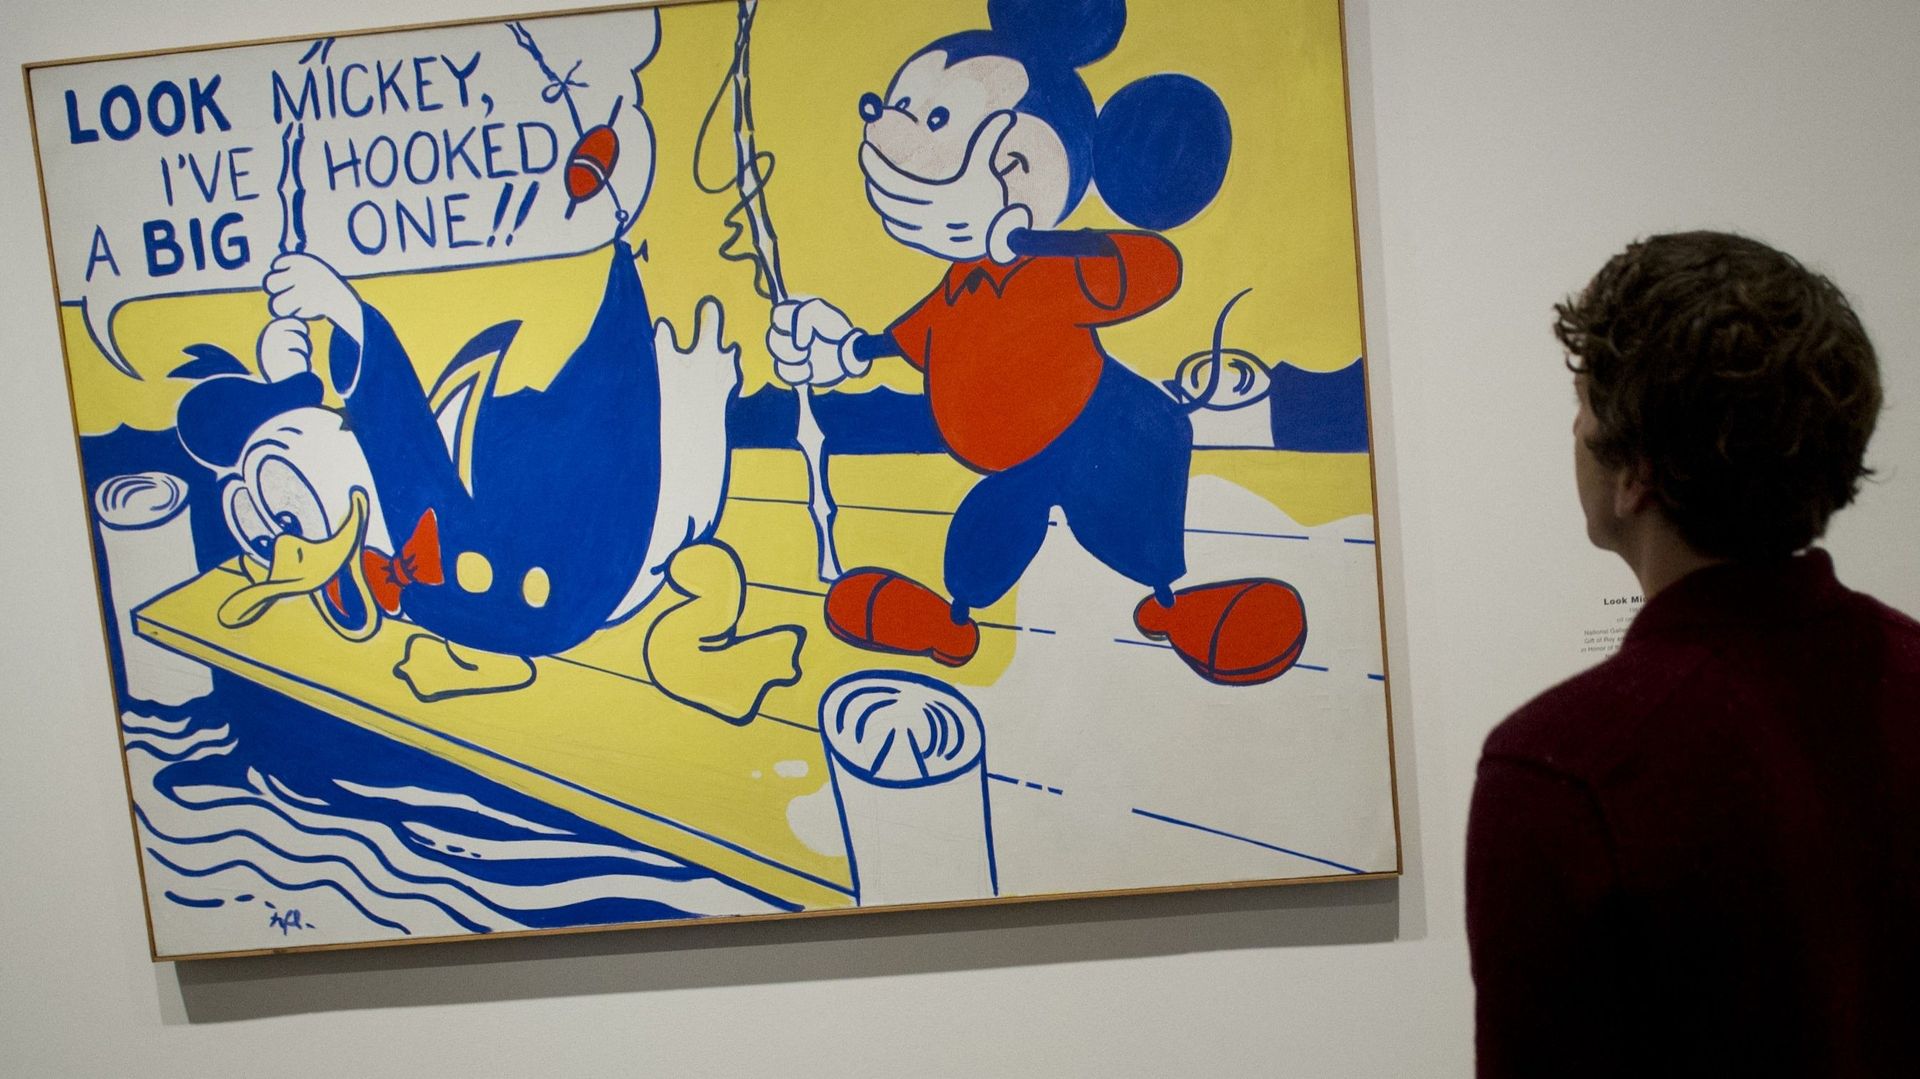 L'œuvre "Look Mickey" de Roy Lichtenstein